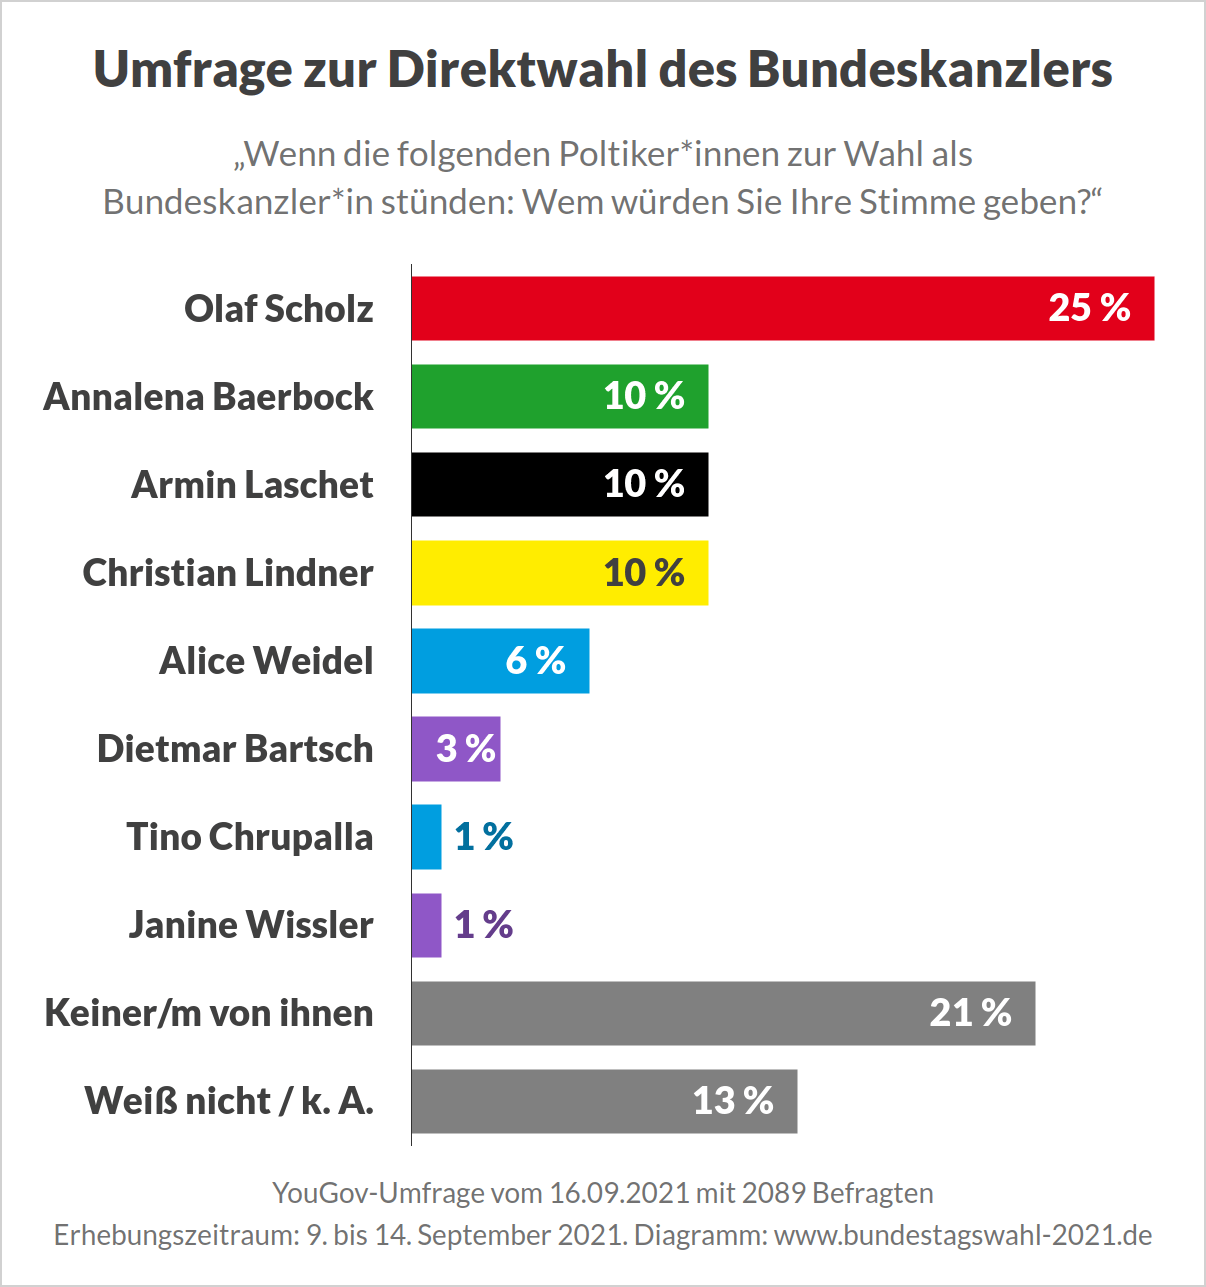 Bundestagswahl 2021 - Umfrage zur Wahl des Bundeskanzlers mit allen Kandidaten (YouGov)